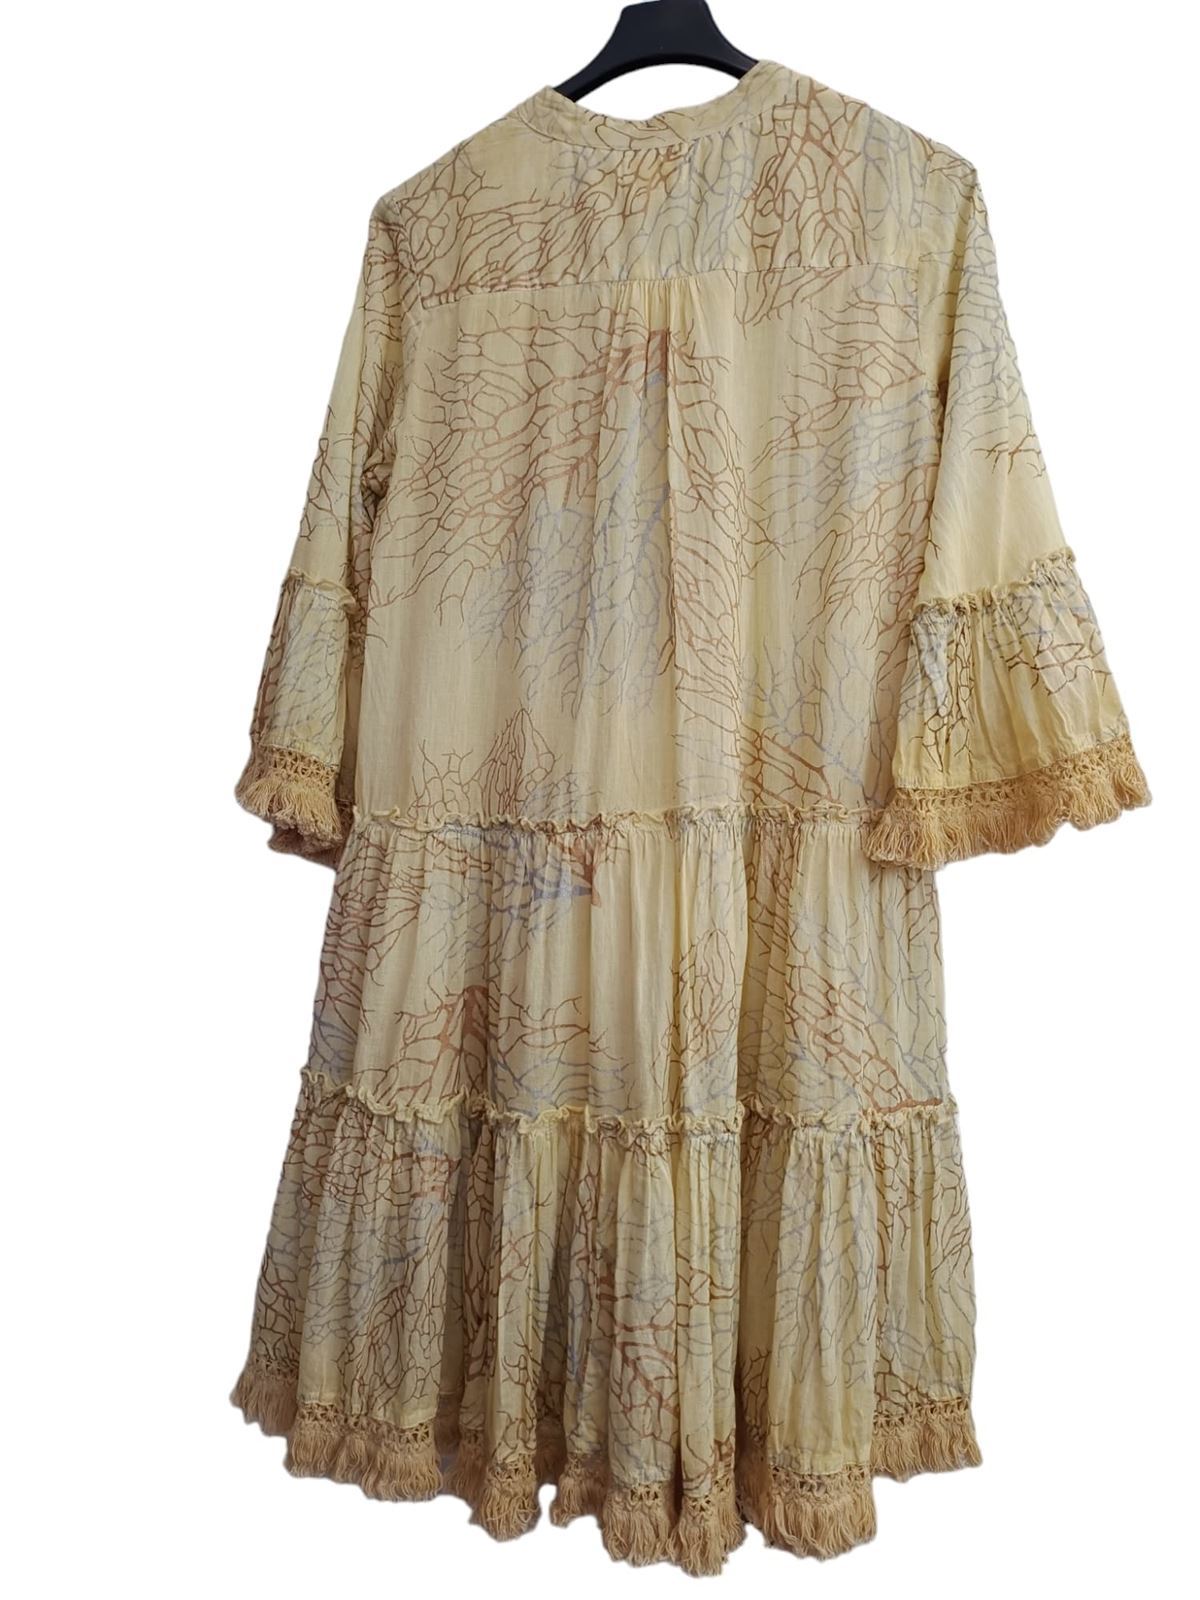 Vestido algodón flojo tonos amarillo y marrón - Imagen 8